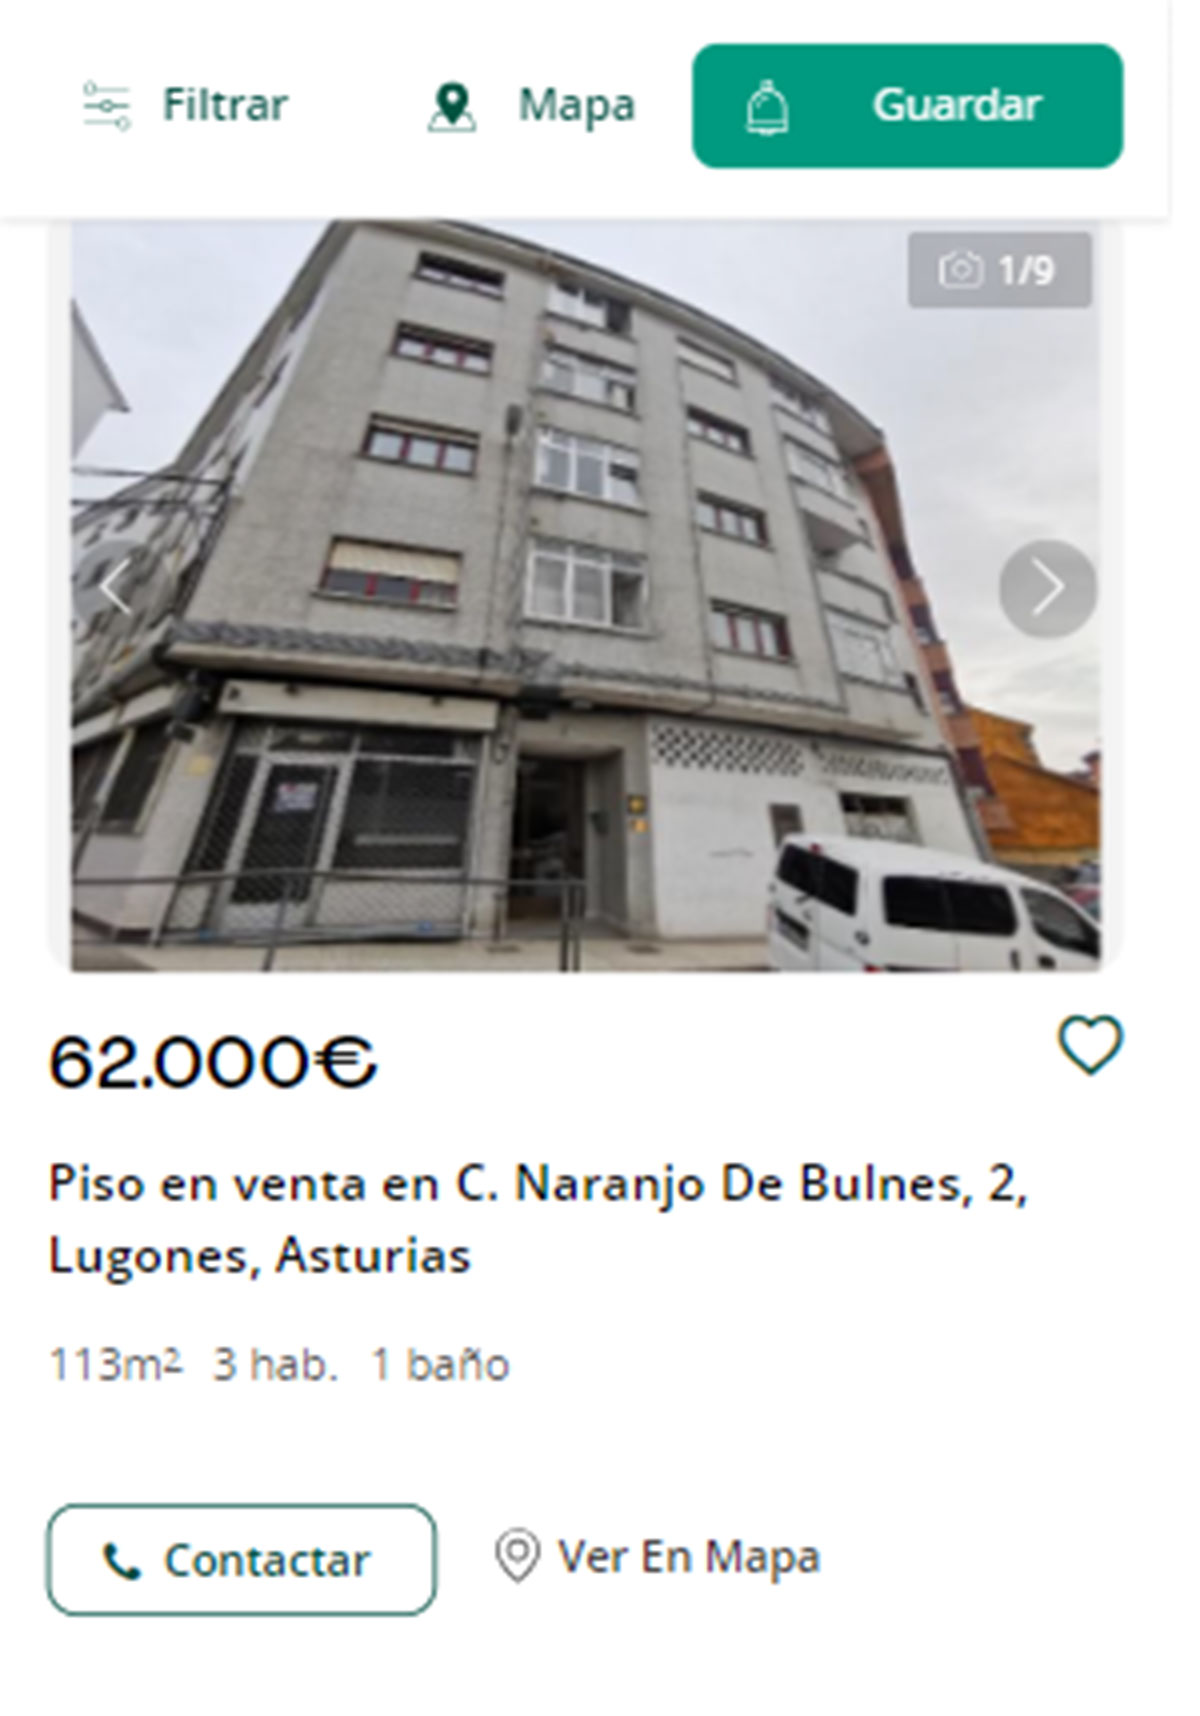 Piso en Asturias por 62.000 euros